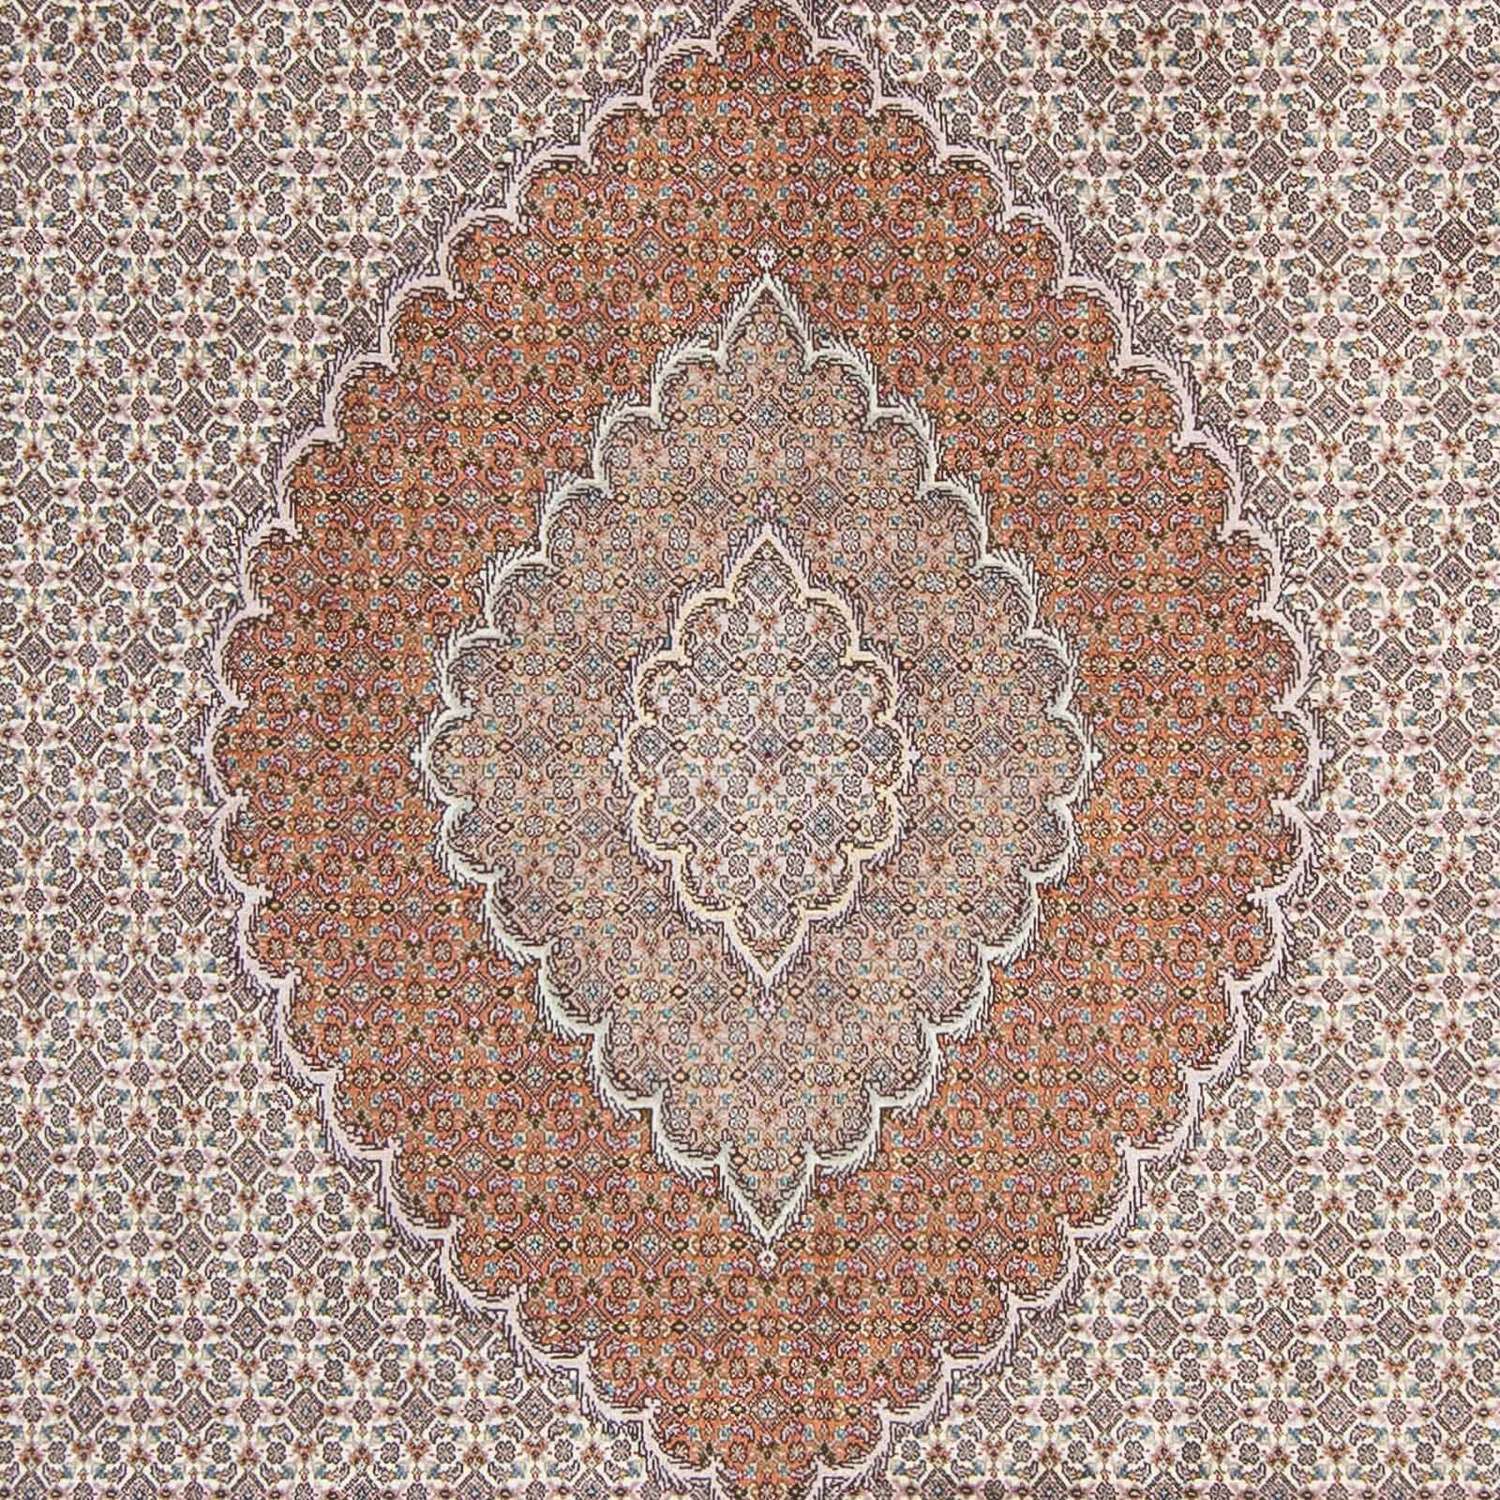 Perský koberec - Tabríz - Královský - 298 x 203 cm - béžová